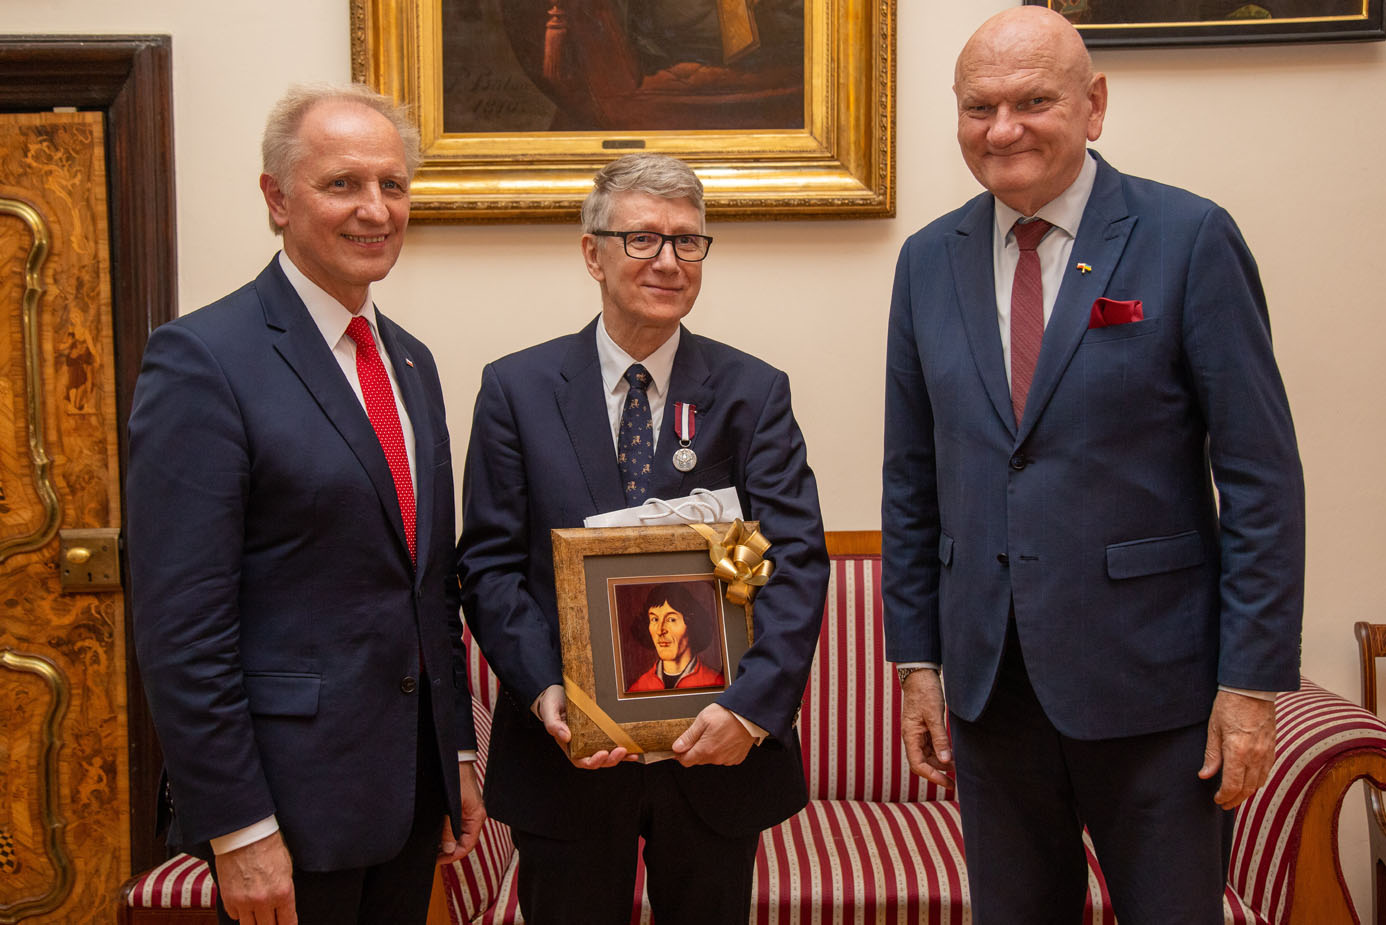 Odznaczenie Honorowe za Zasługi dla Samorządu Terytorialnego dla Marka Żydowicza